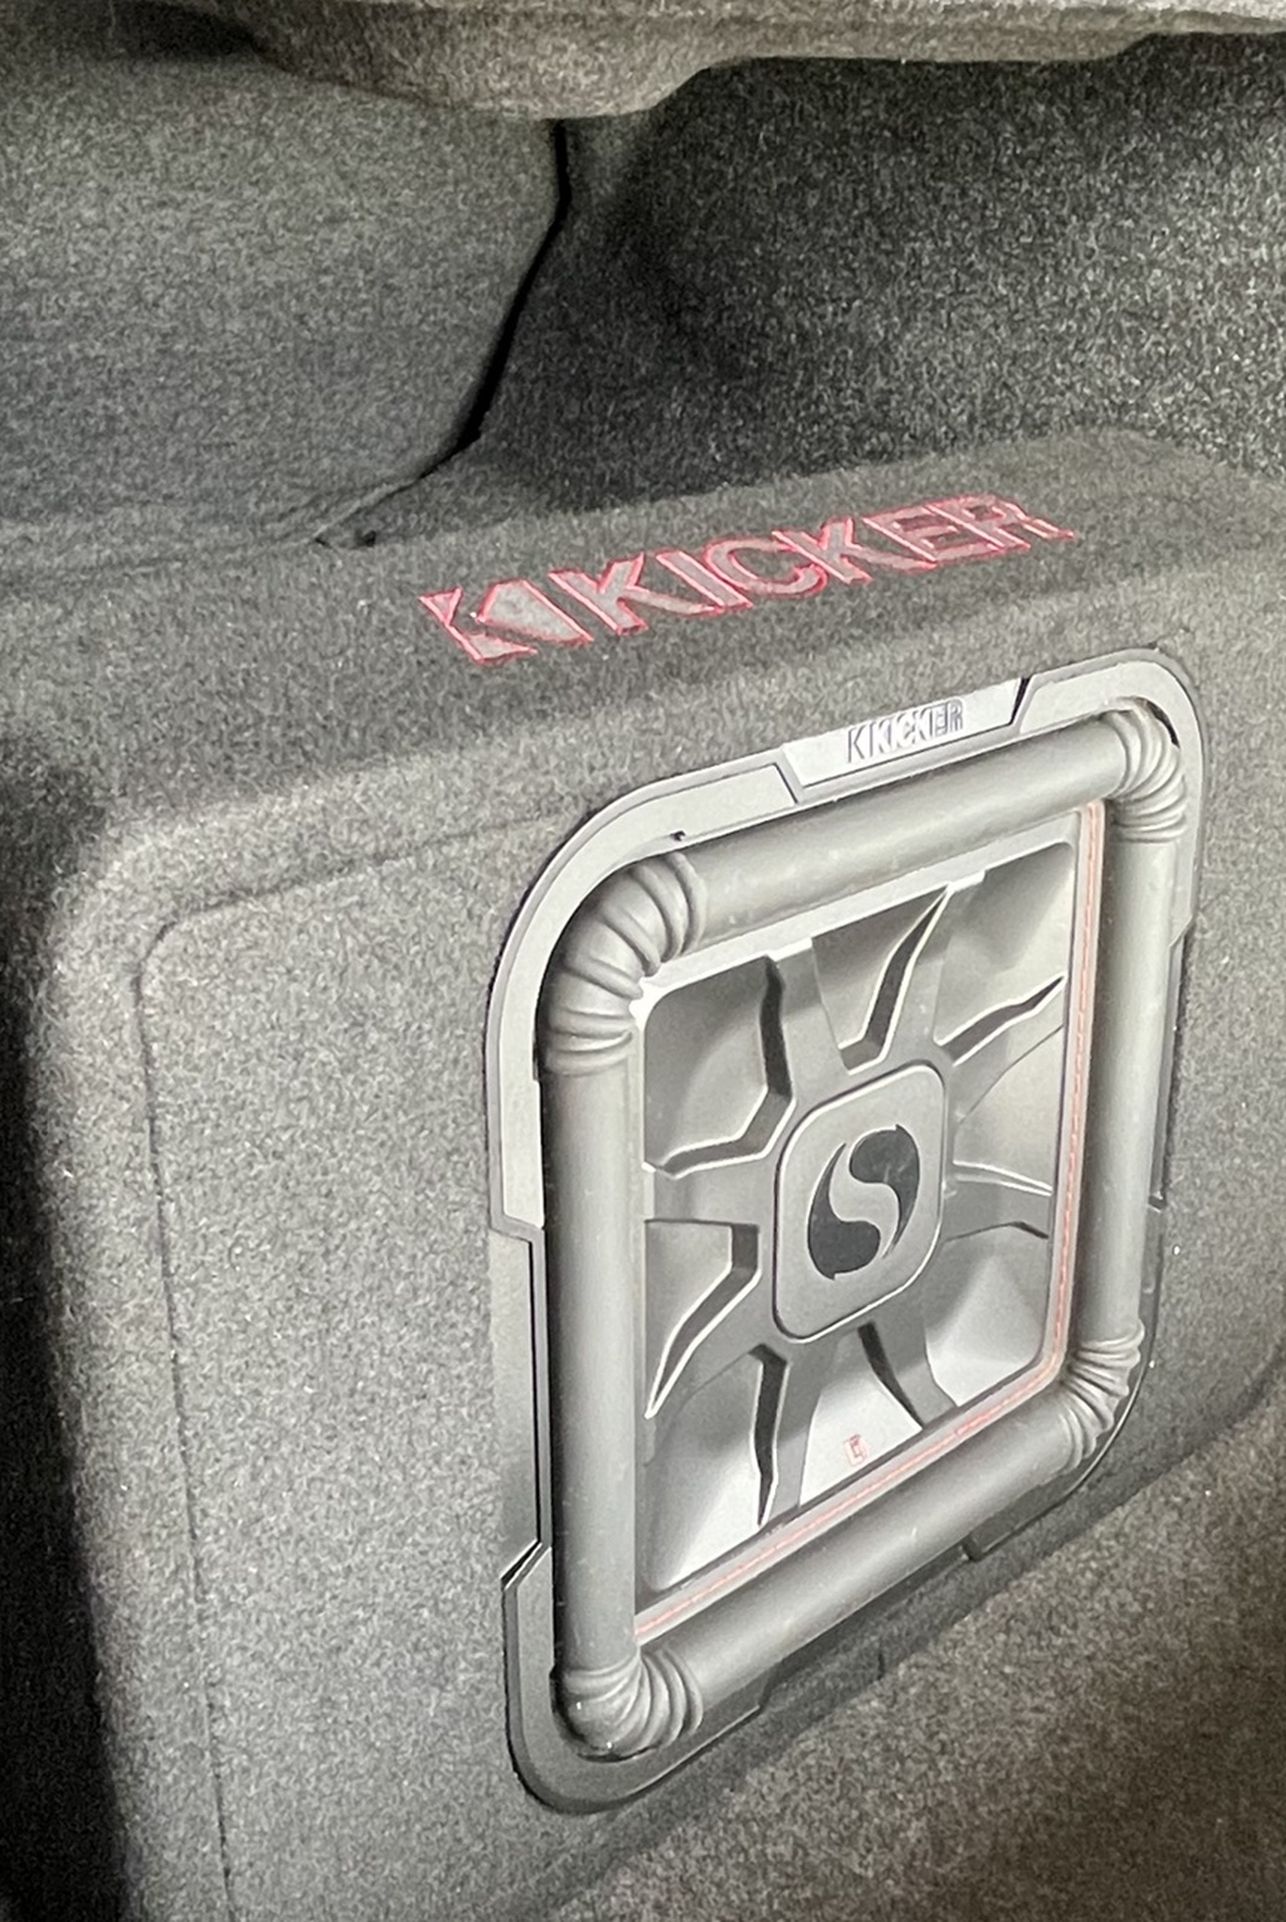 Kicker Solo Baric 12” Subwoofer & Kicker Amplifier